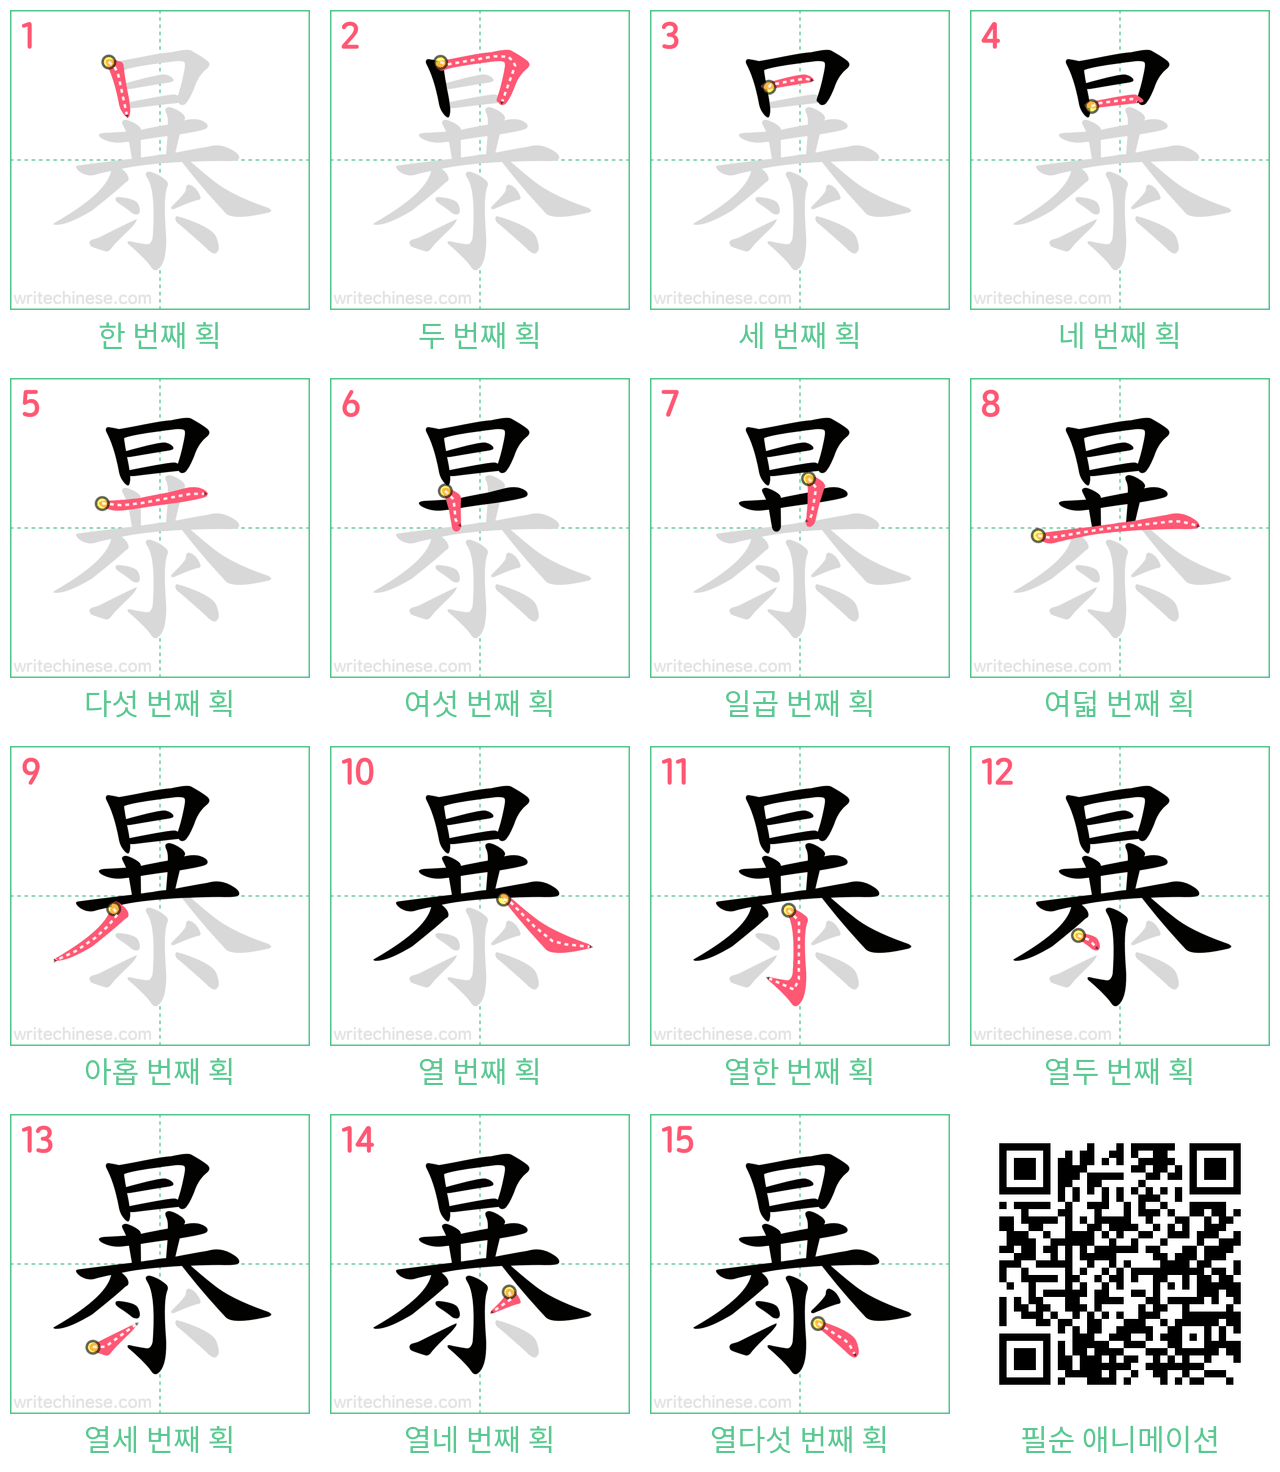 暴 step-by-step stroke order diagrams